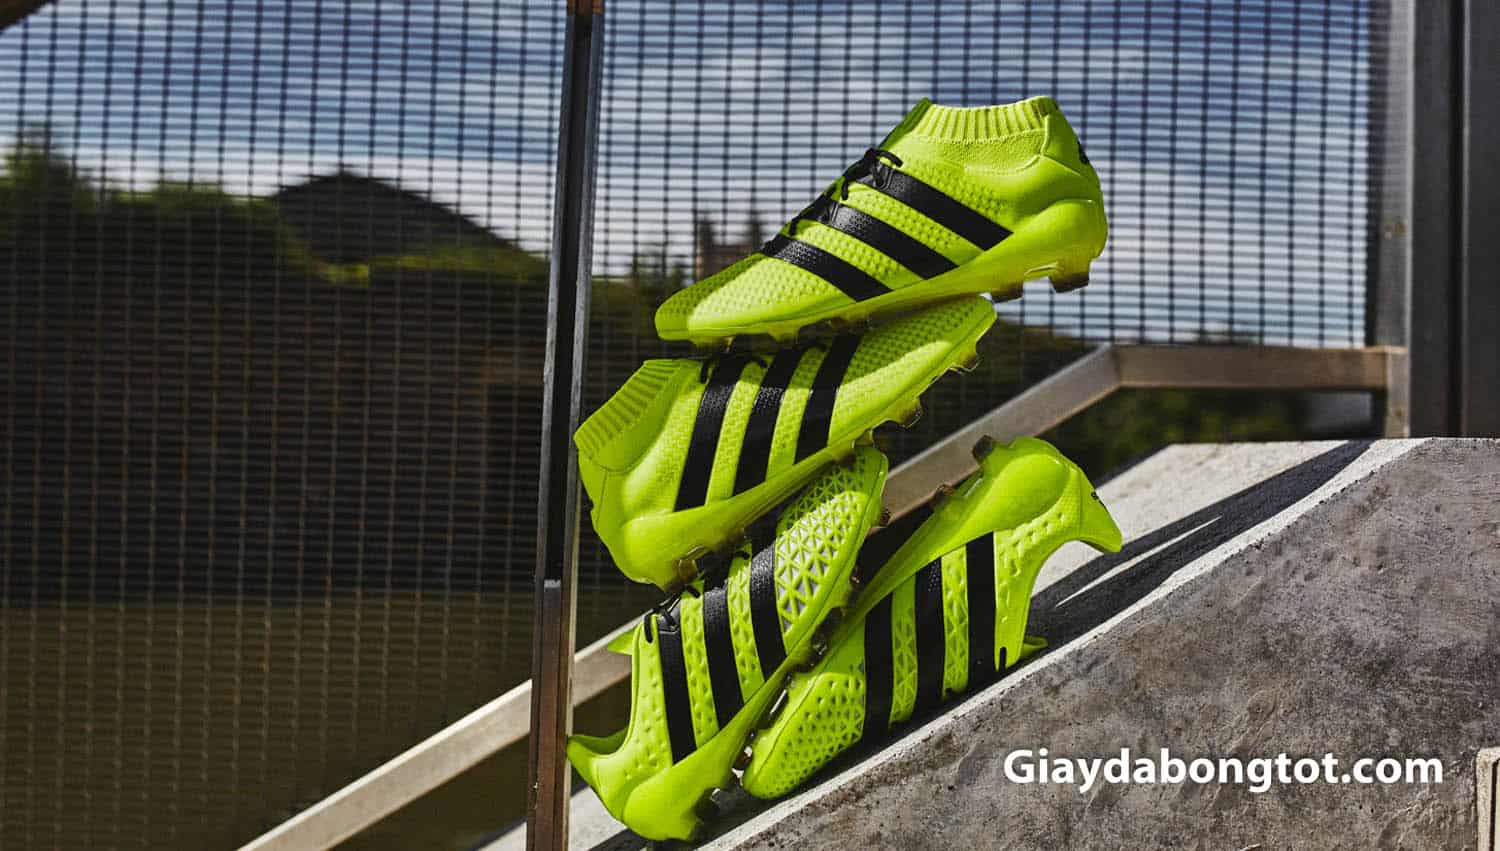 Giày đá bóng Adidas ACE 16.1 FG ra mắt năm 2016 với 2 phiên bản